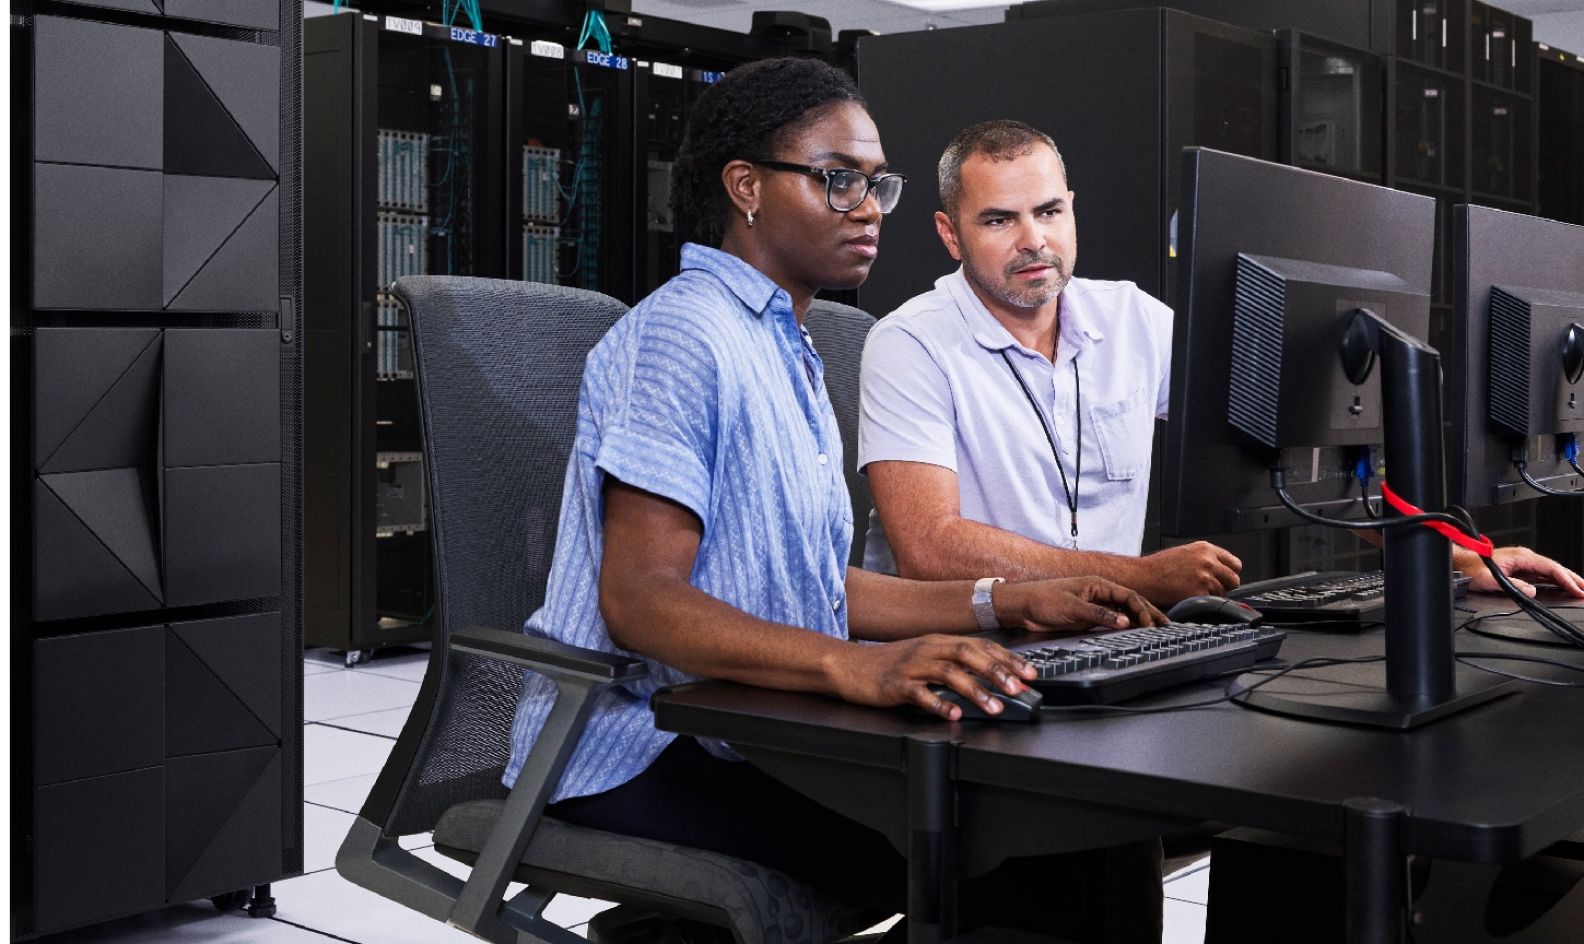 Dos trabajadores sentados en un escritorio compartido, ambos mirando el monitor de una computadora